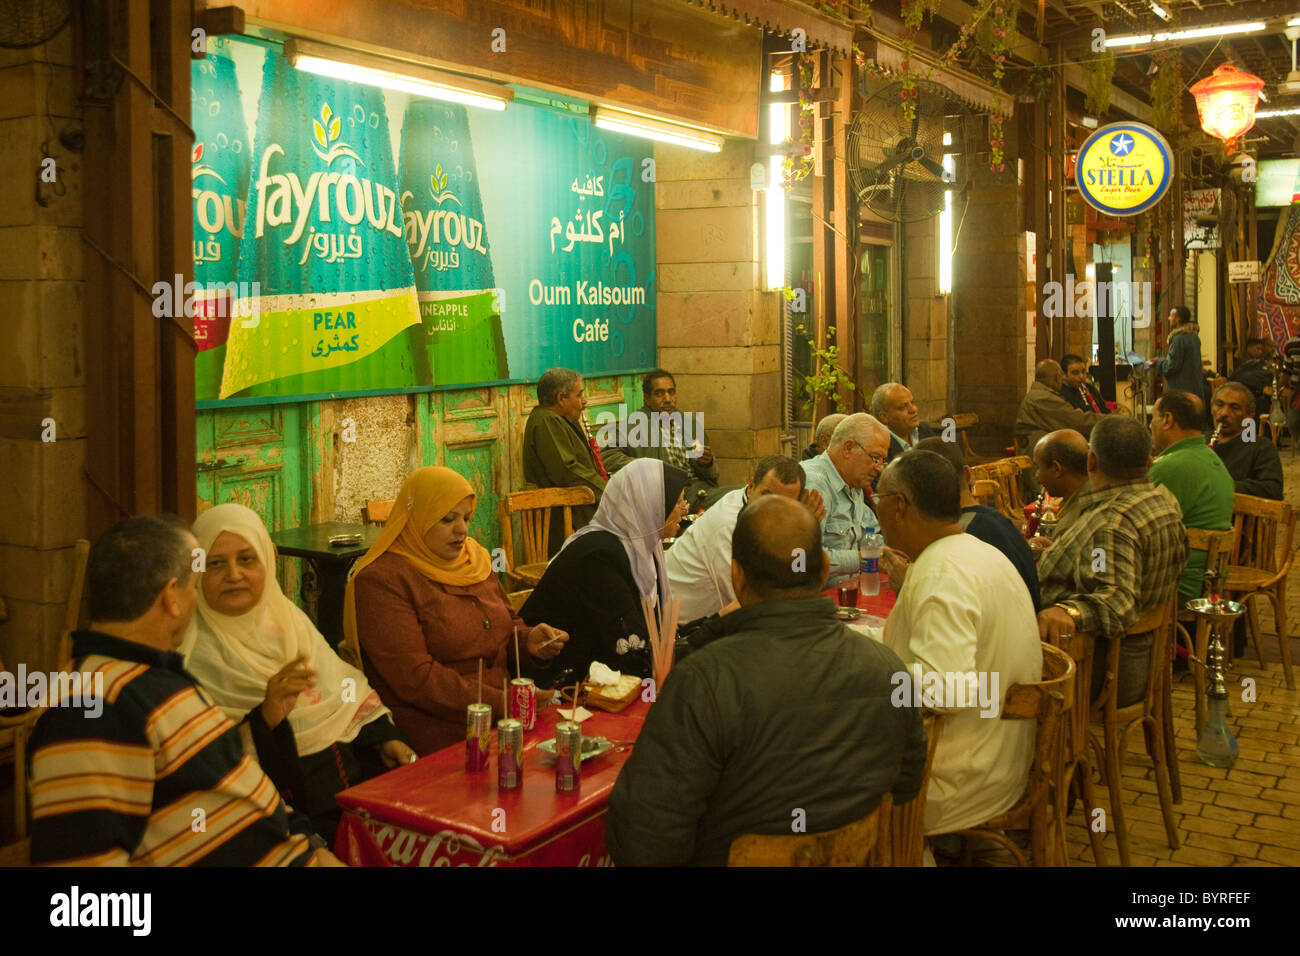 Aegypten, Luxor, Oum Koulsoum Cafe im Touristen-Souk Stock Photo